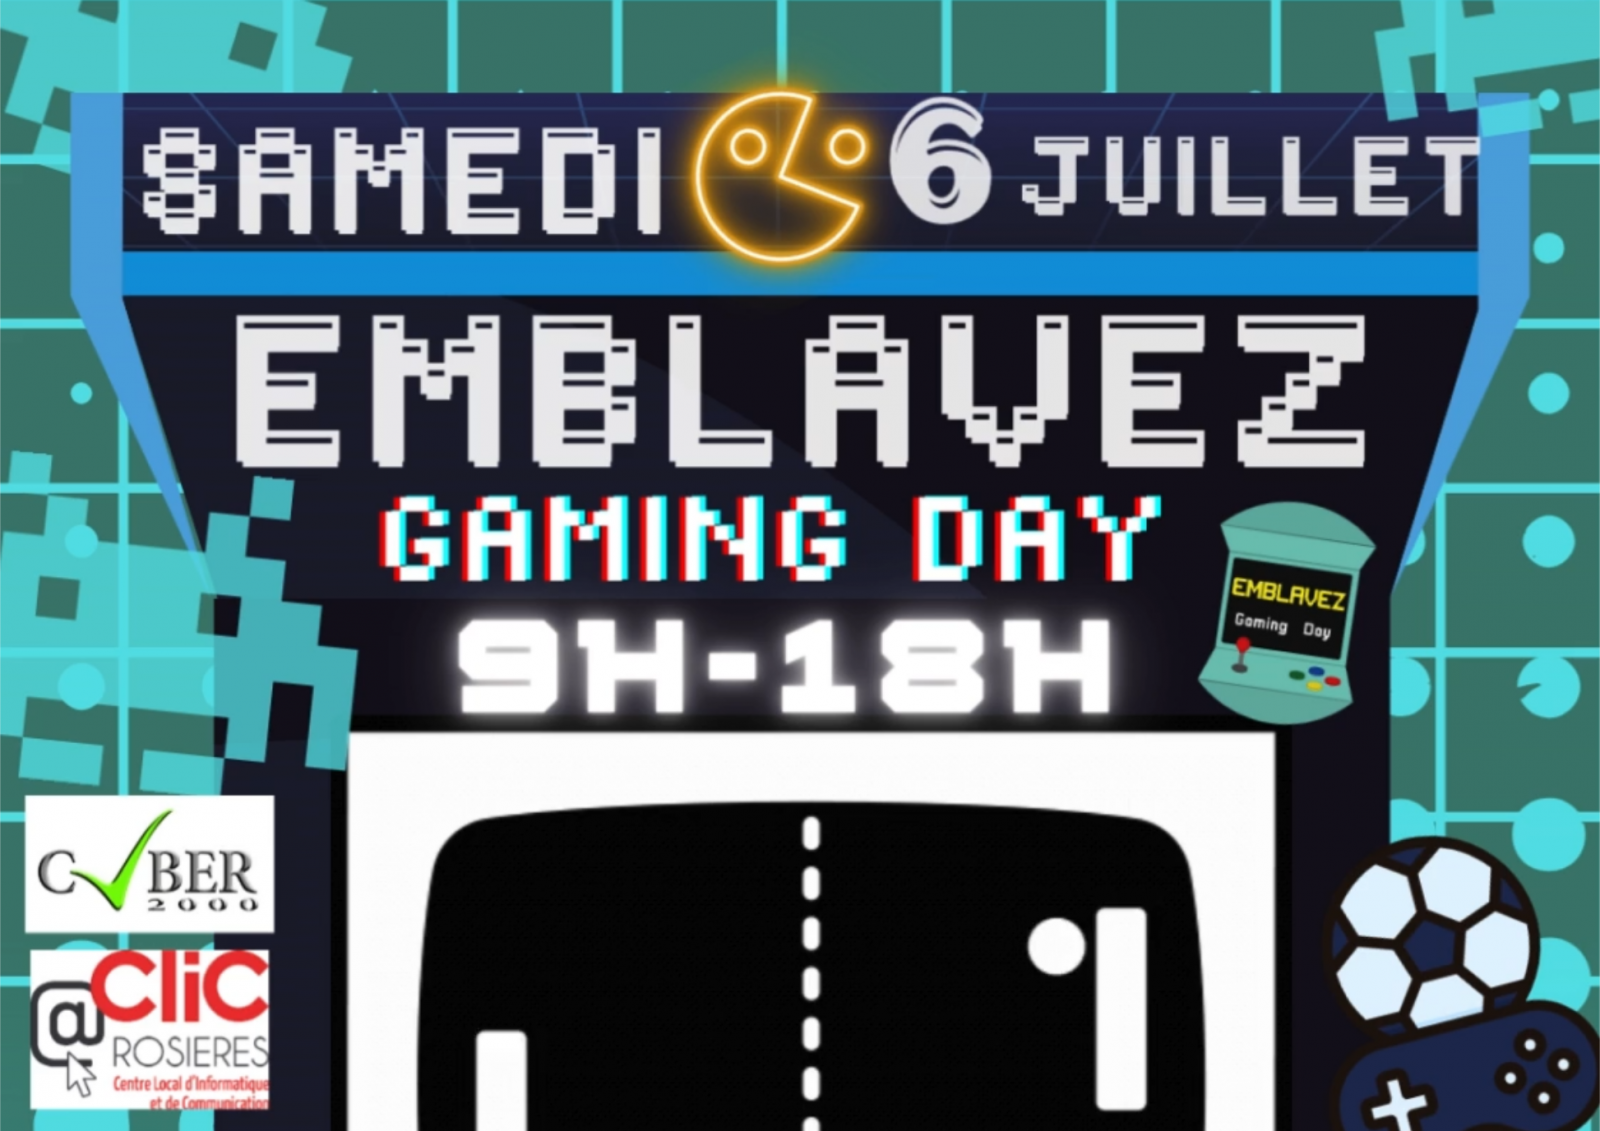 Emblavez Gaming Day